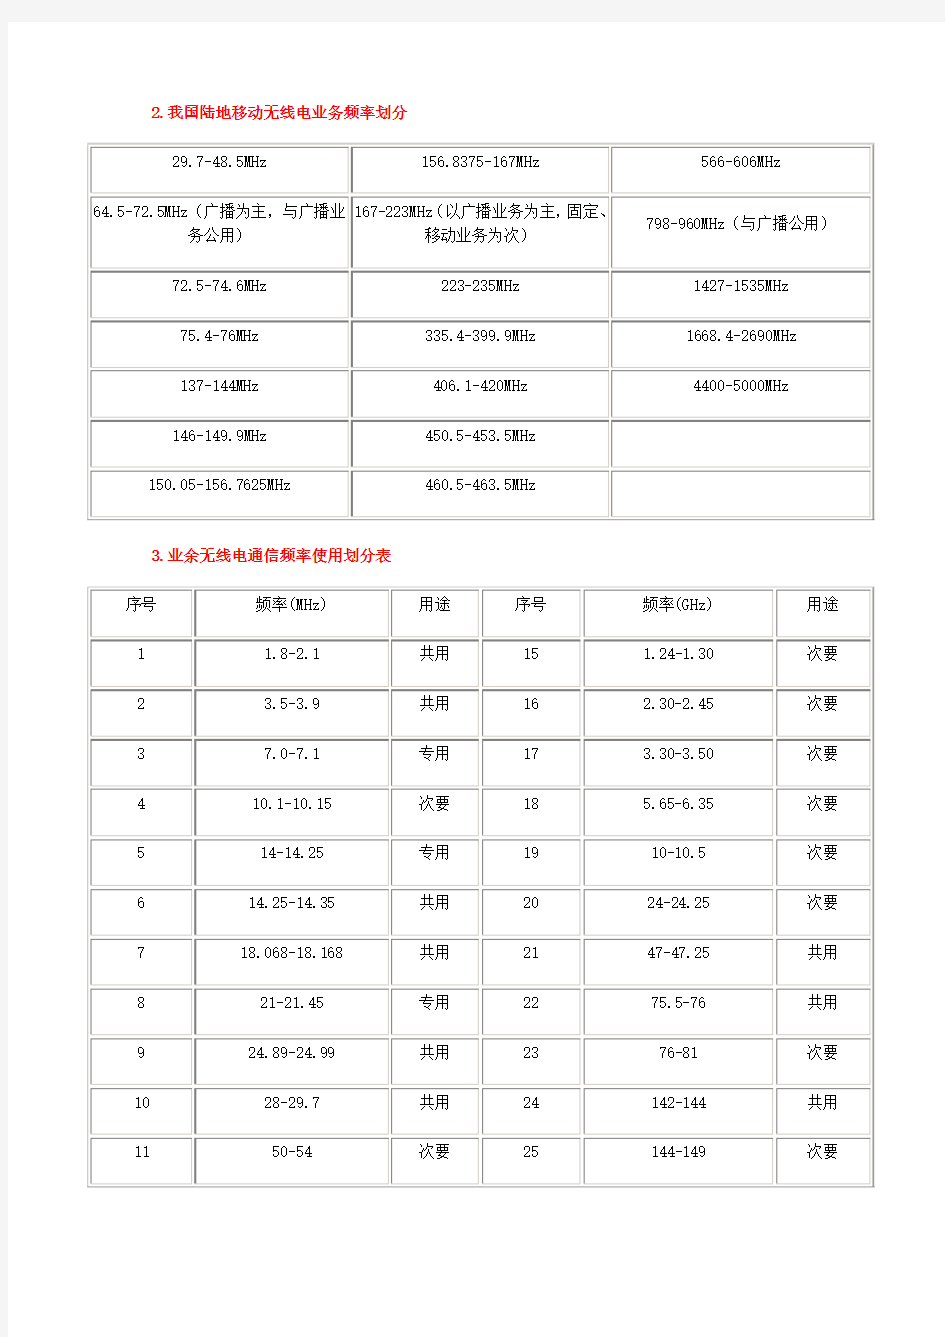 中国无线电频率划分及主要用途